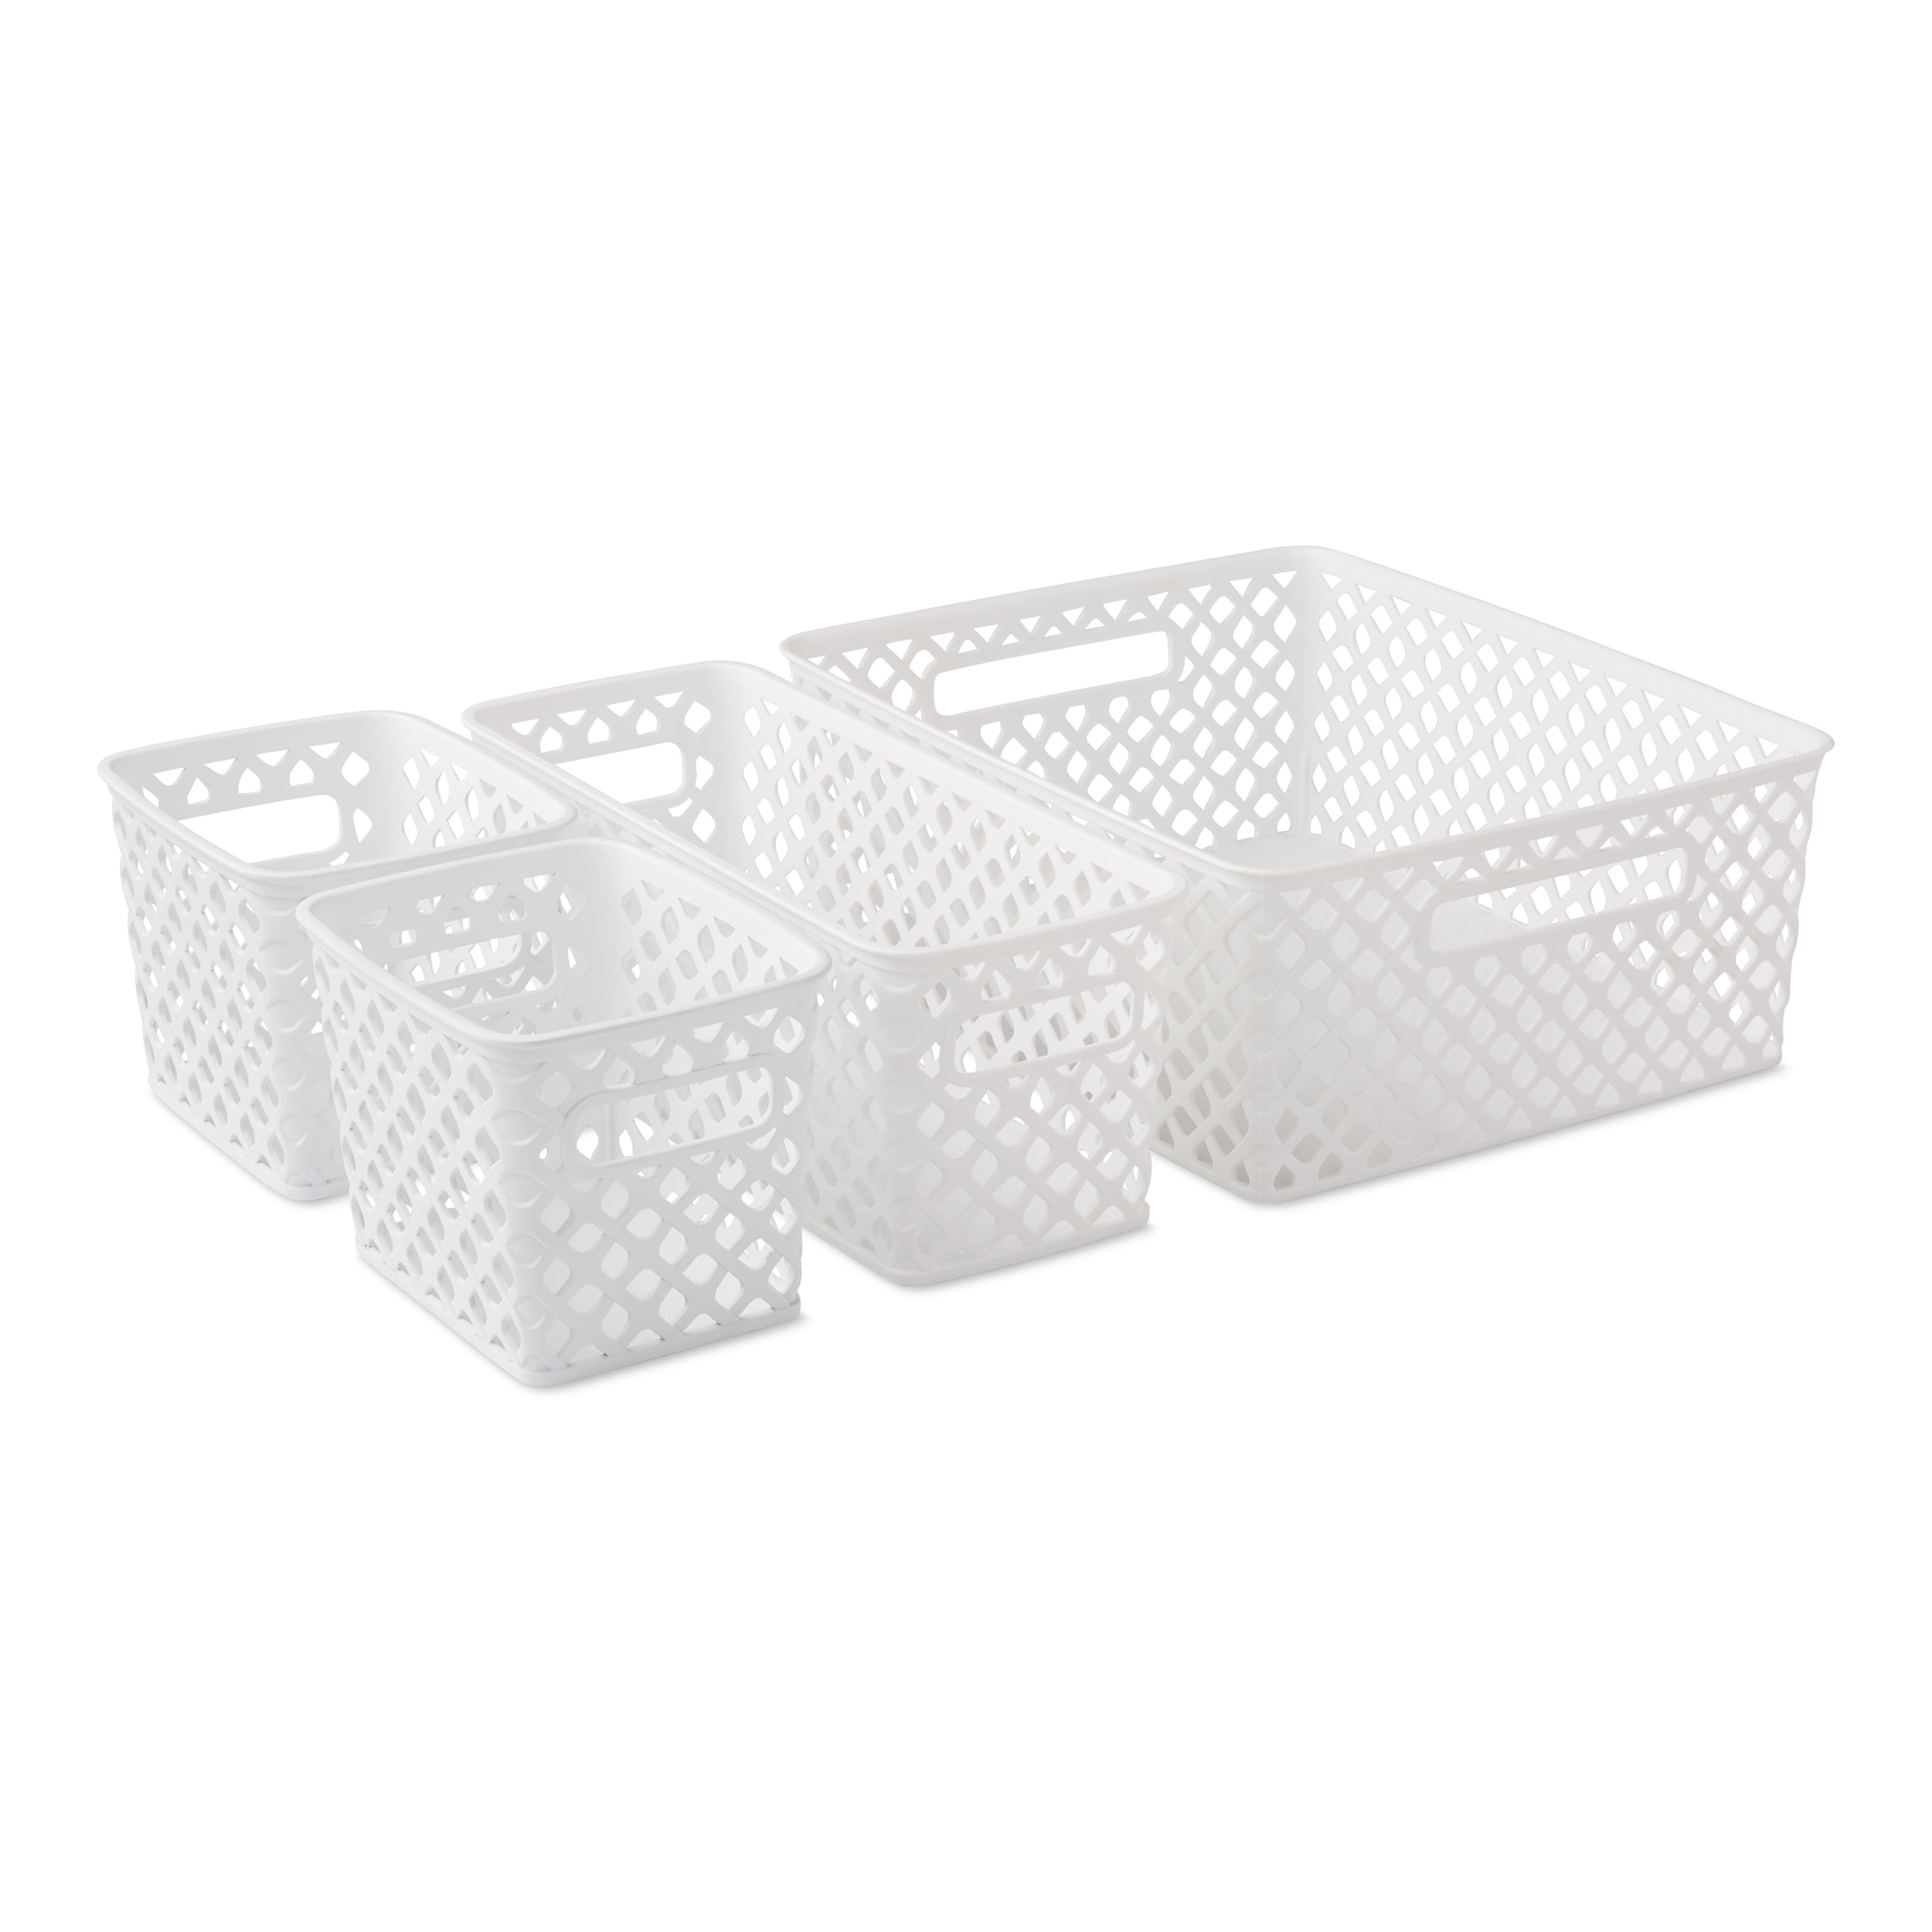 Mainstays Slim Plastic Storage Trays Baskets in White Set of 6 